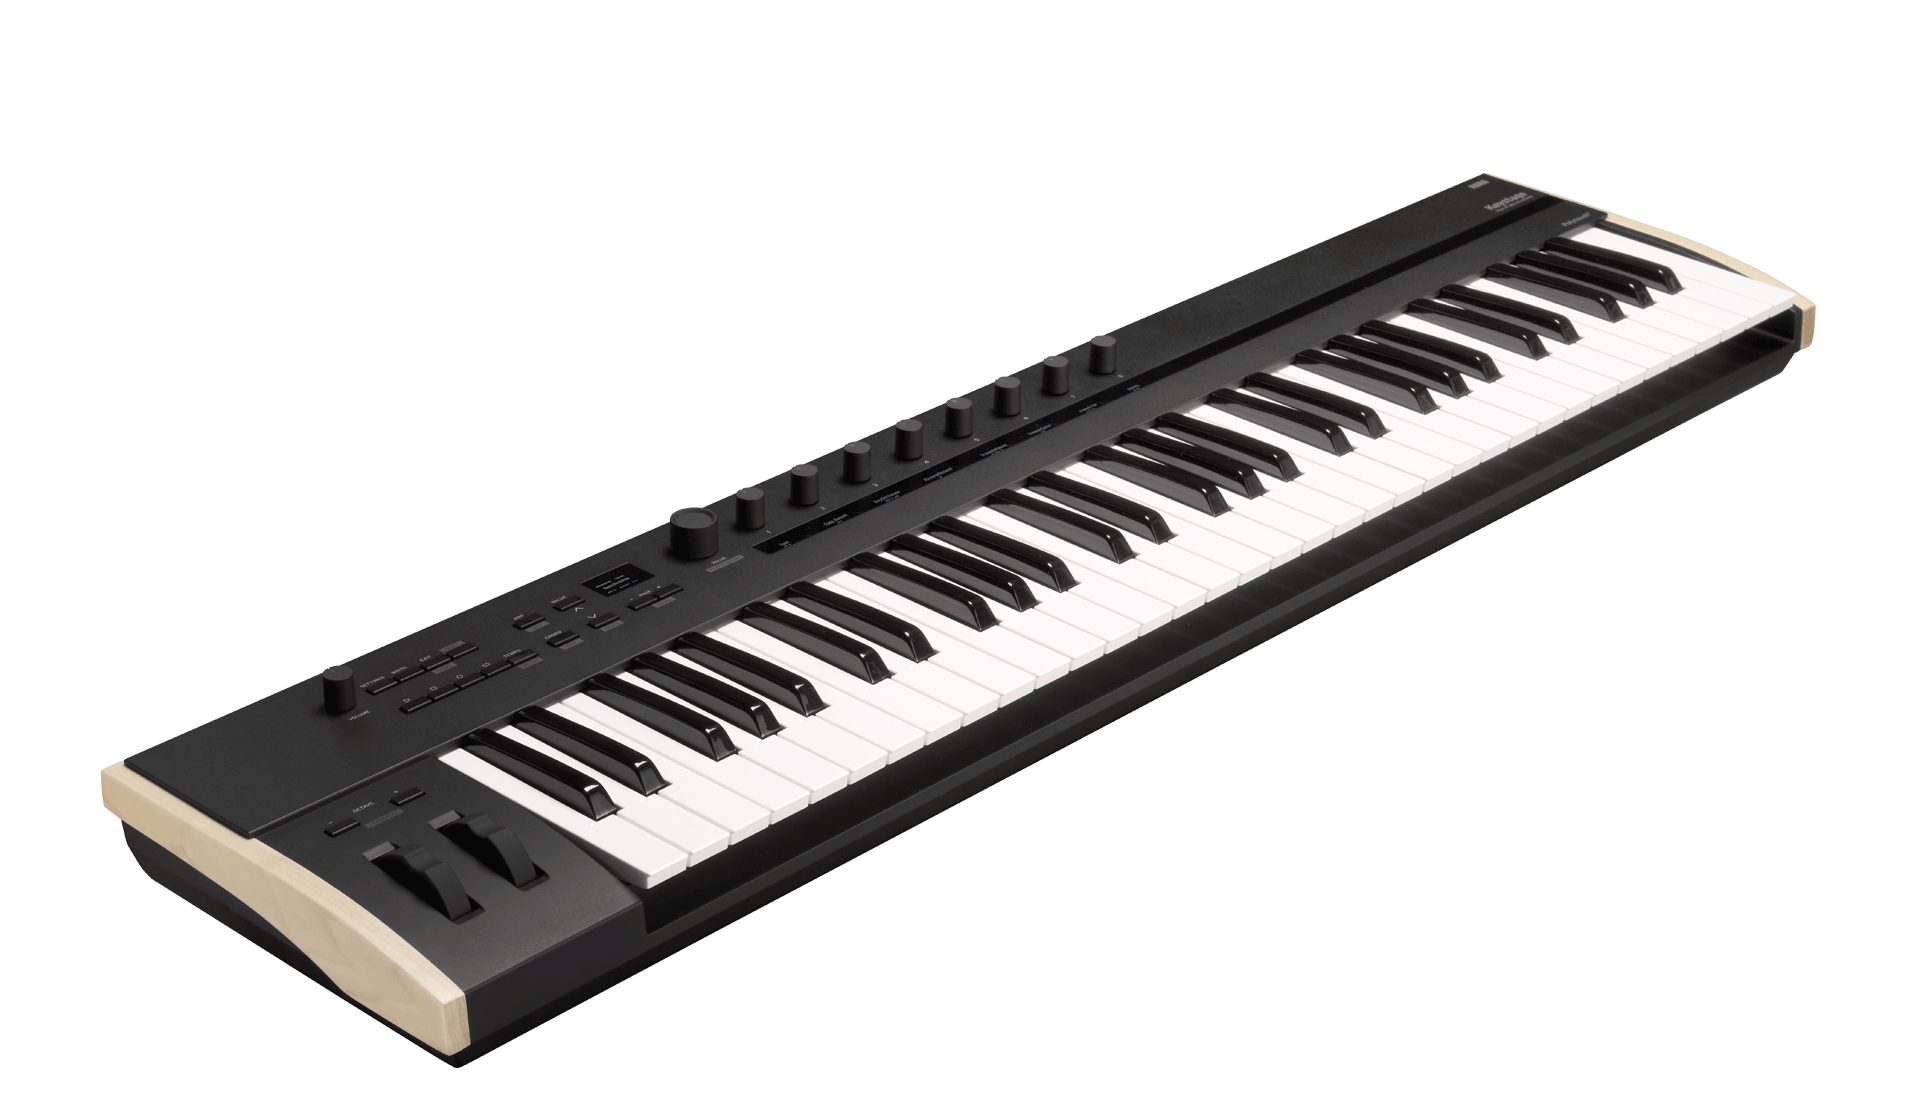 Korg Keystage Poly at MIDI Keyboard (49 Keys / 61 Keys)